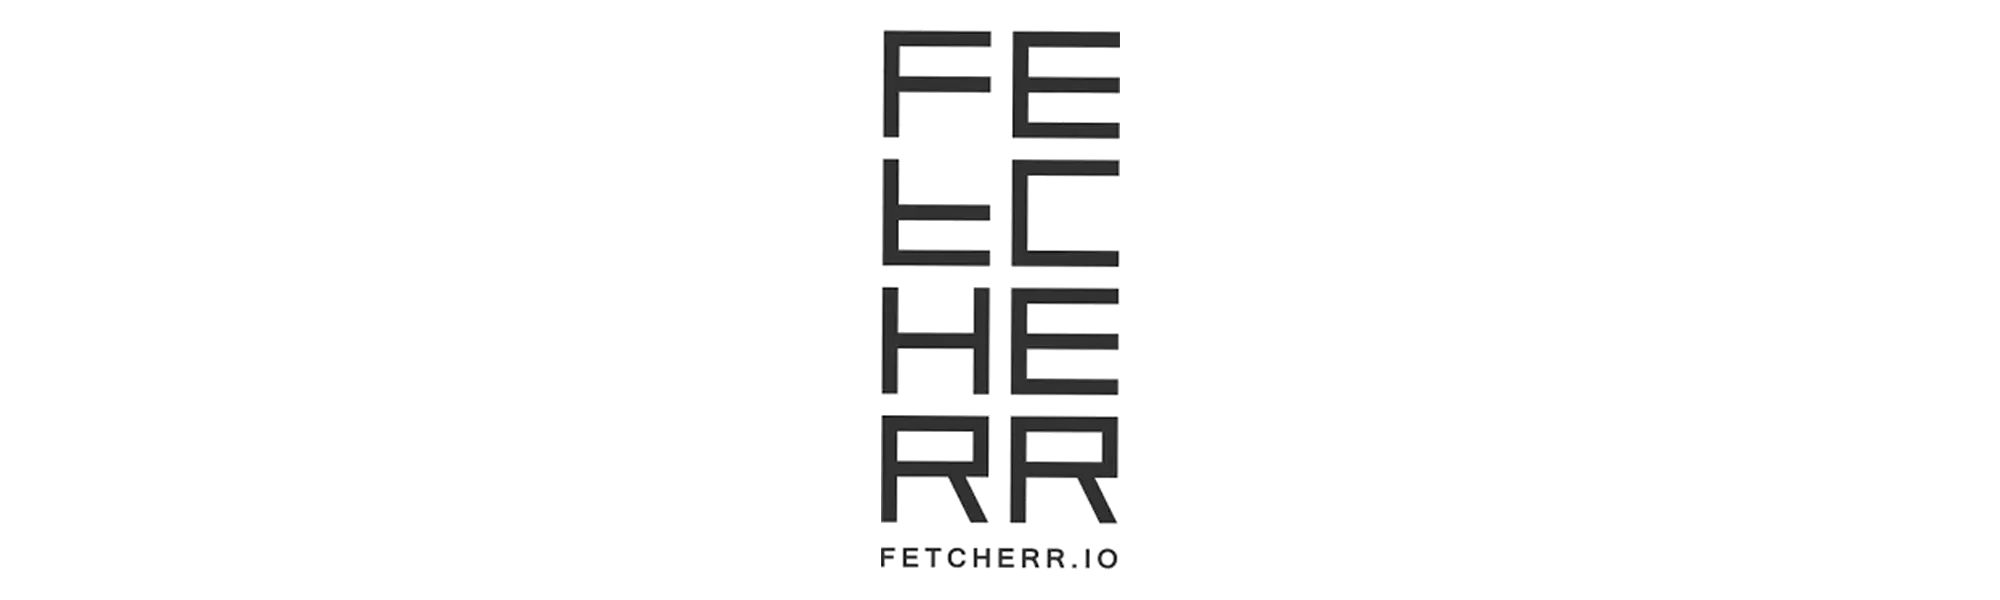 Fetcherr.io